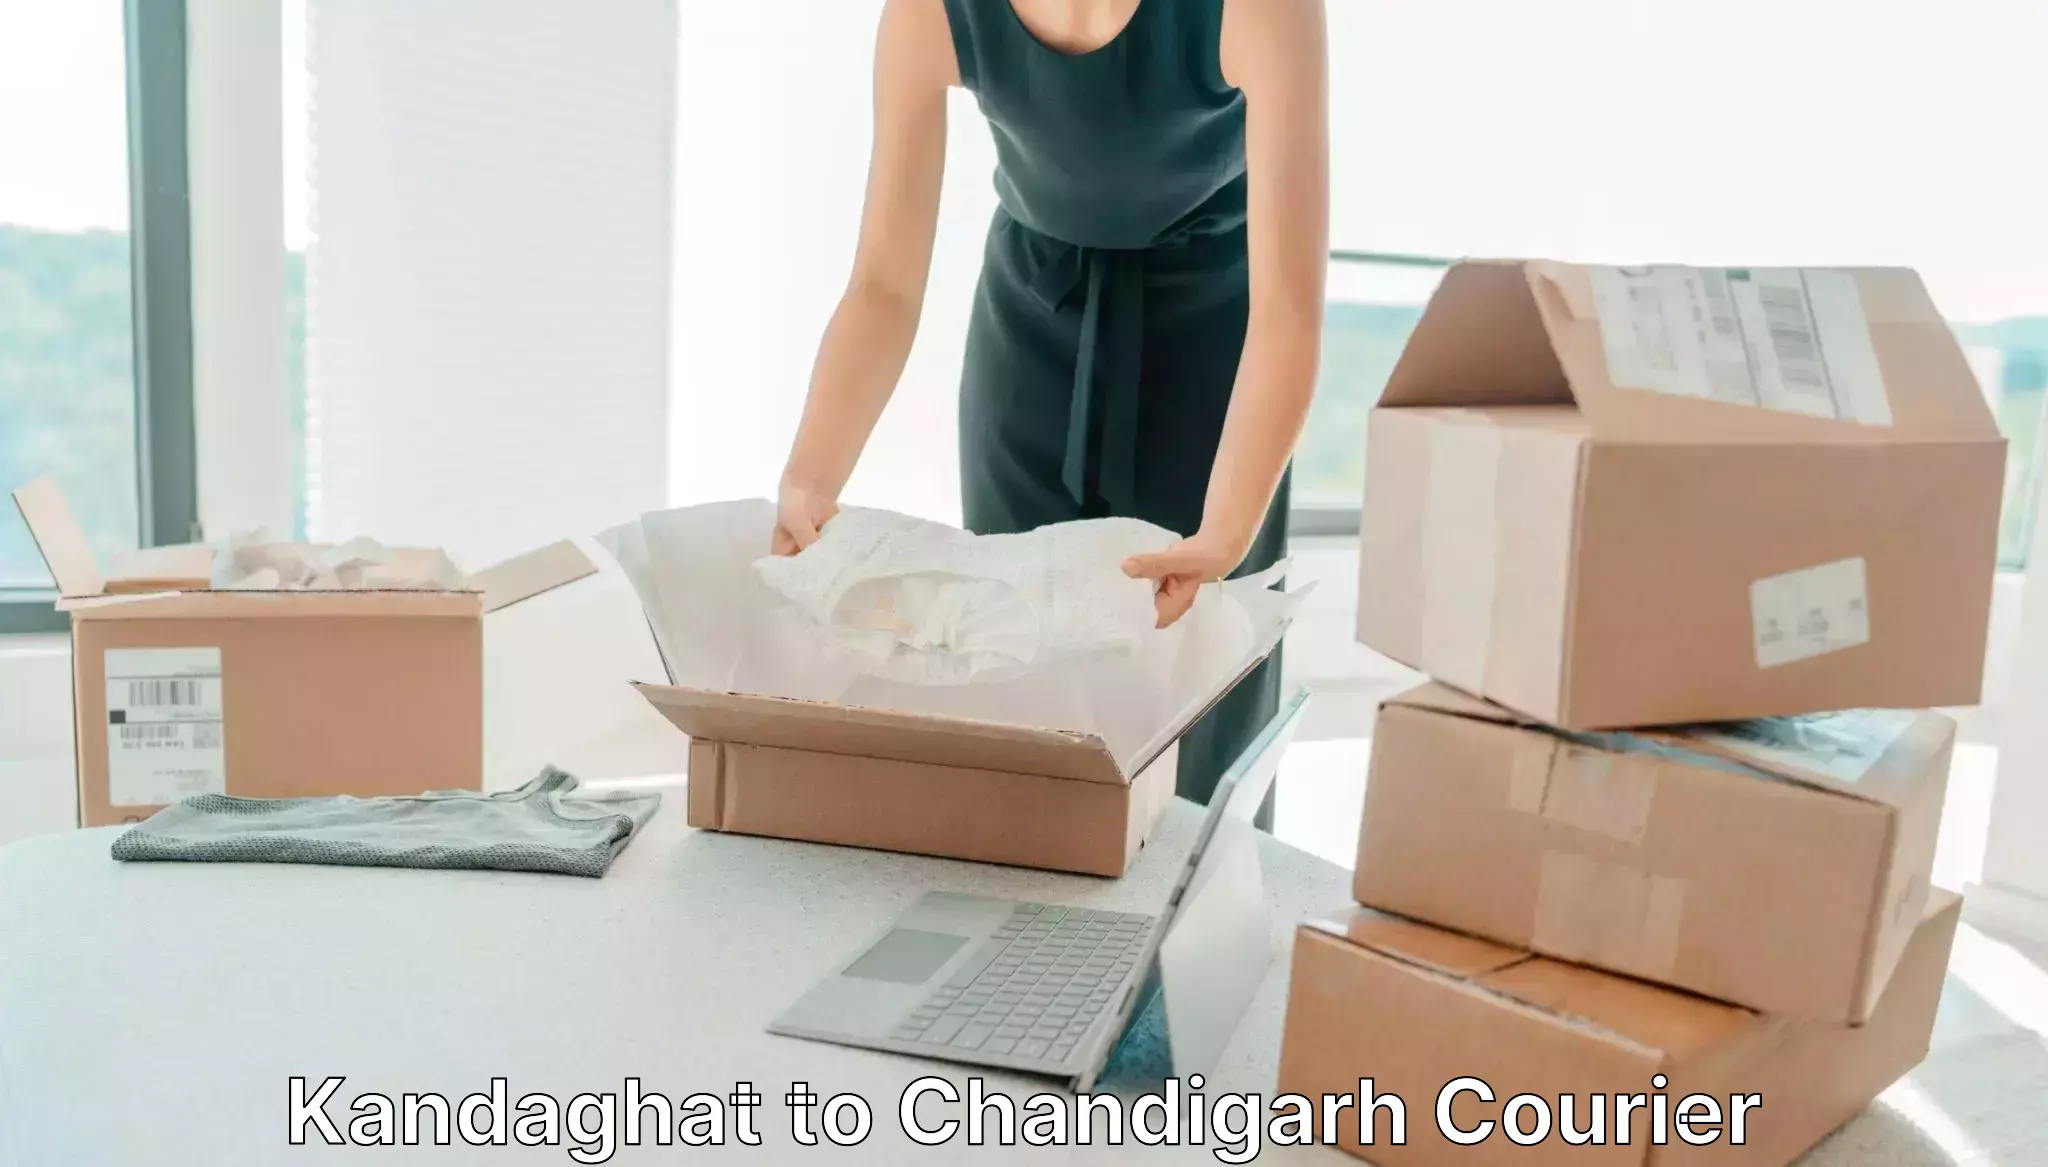 Door-to-door freight service Kandaghat to Chandigarh